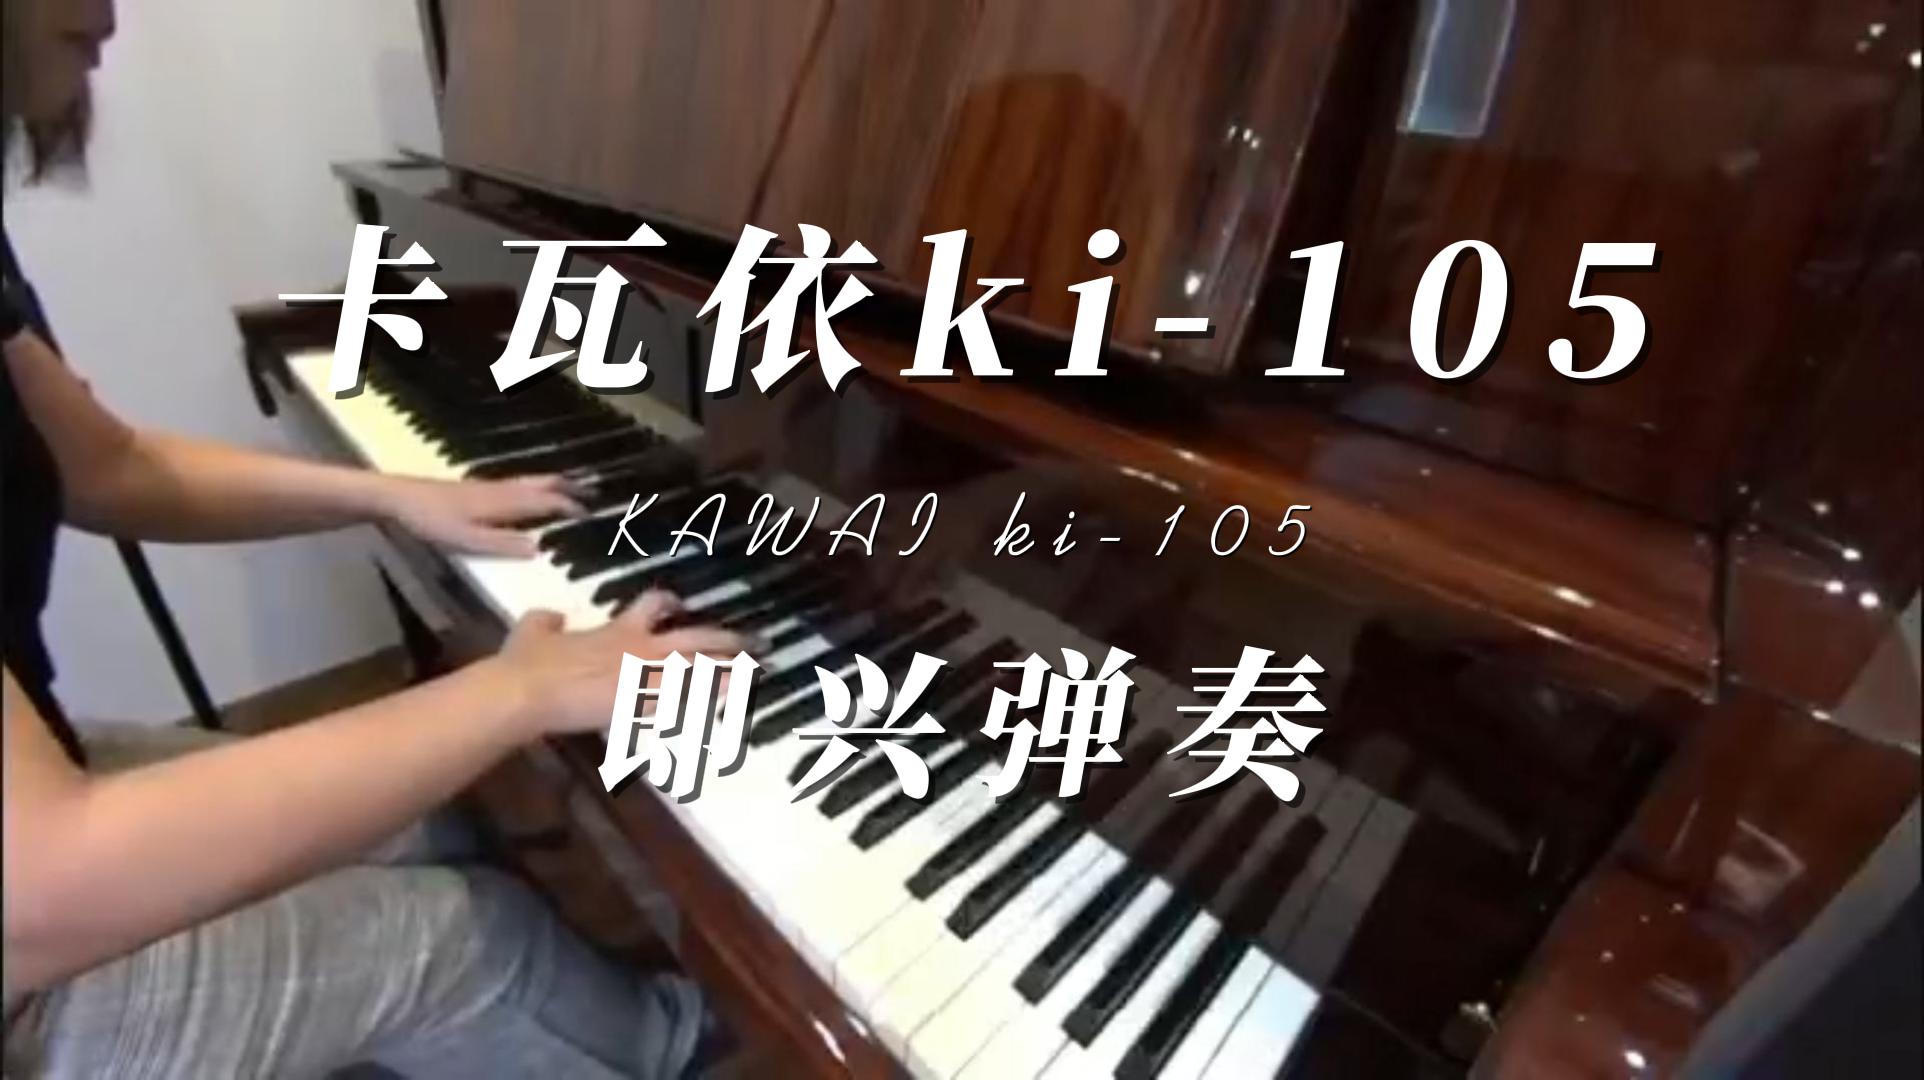 KAWAI 卡瓦依ki-105立式钢琴音色试听_柏通租琴整理